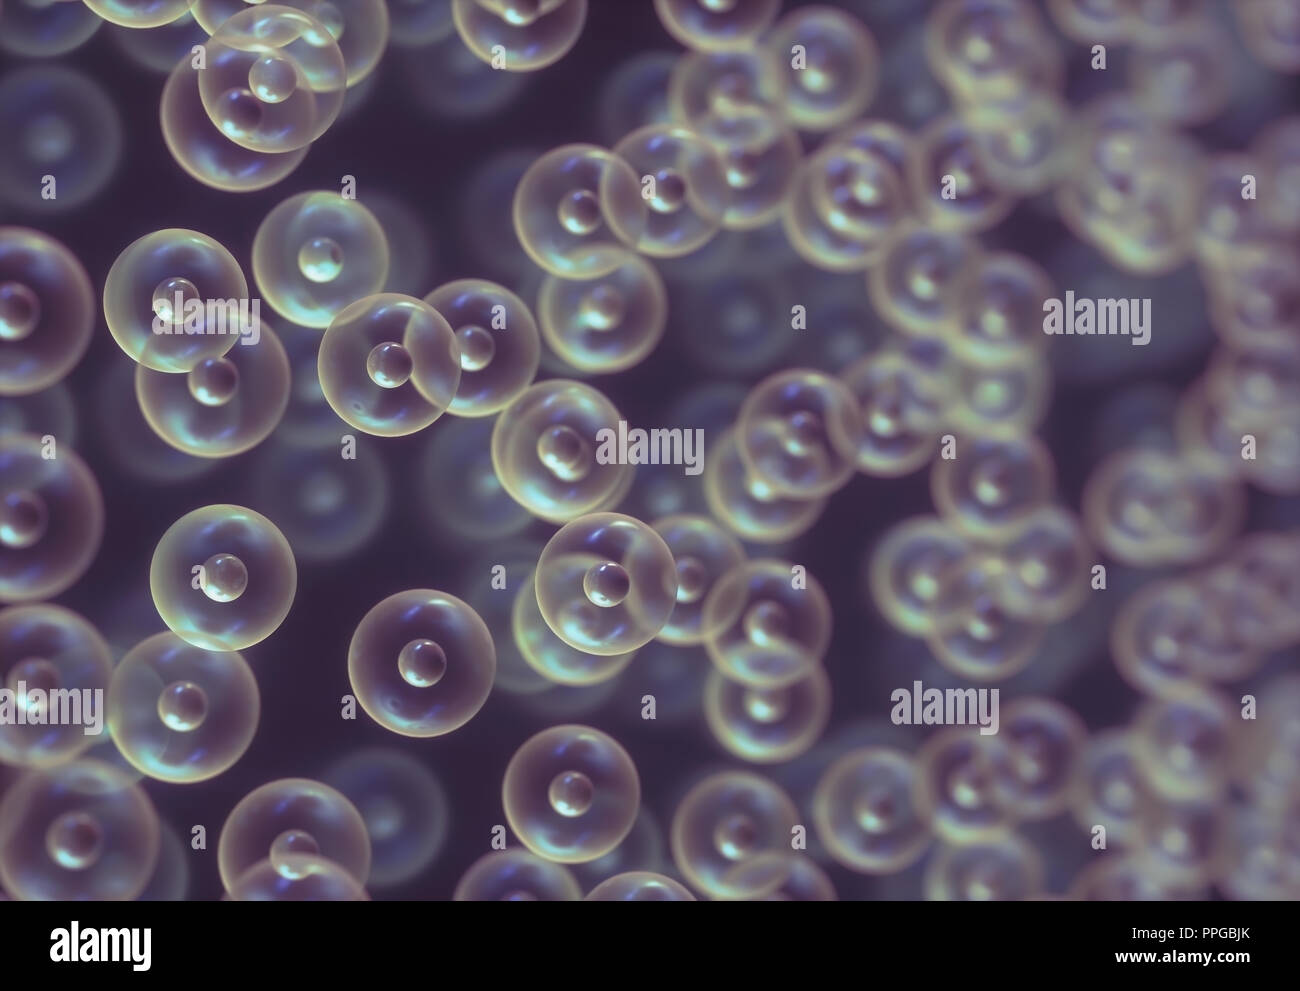 Immagine astratta di sfere interconnesse nel concetto di scienza. Biologia molecolare, la struttura scientifica cellulare. Foto Stock